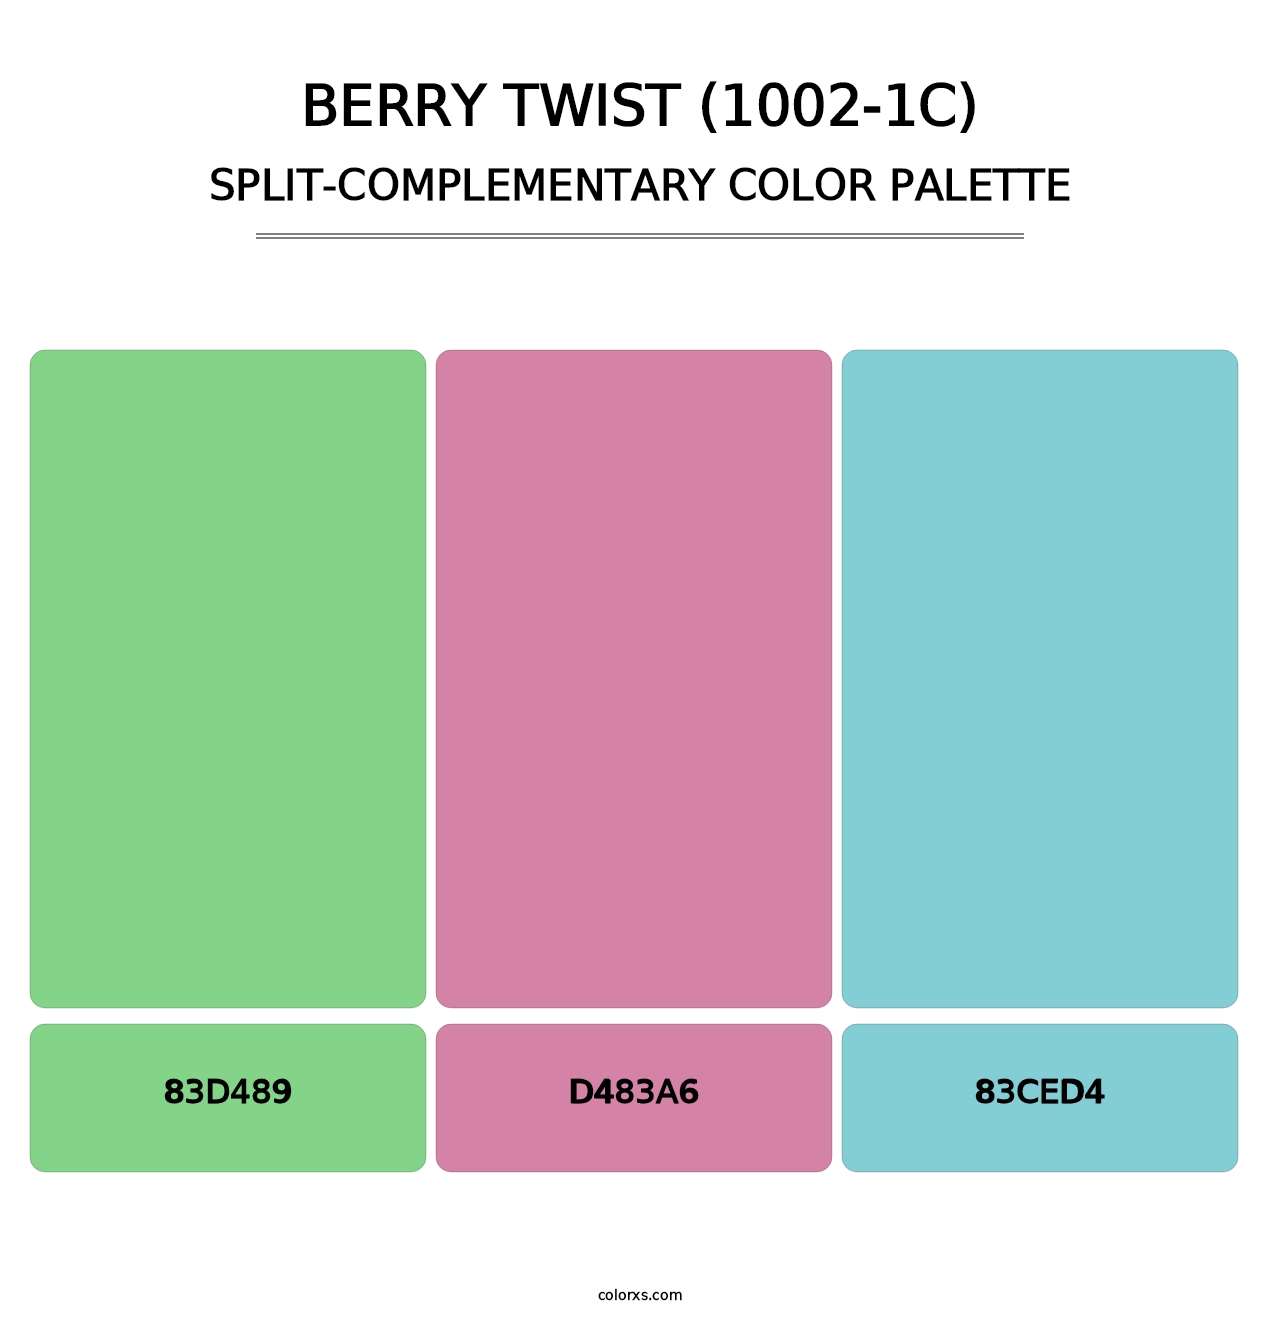 Berry Twist (1002-1C) - Split-Complementary Color Palette